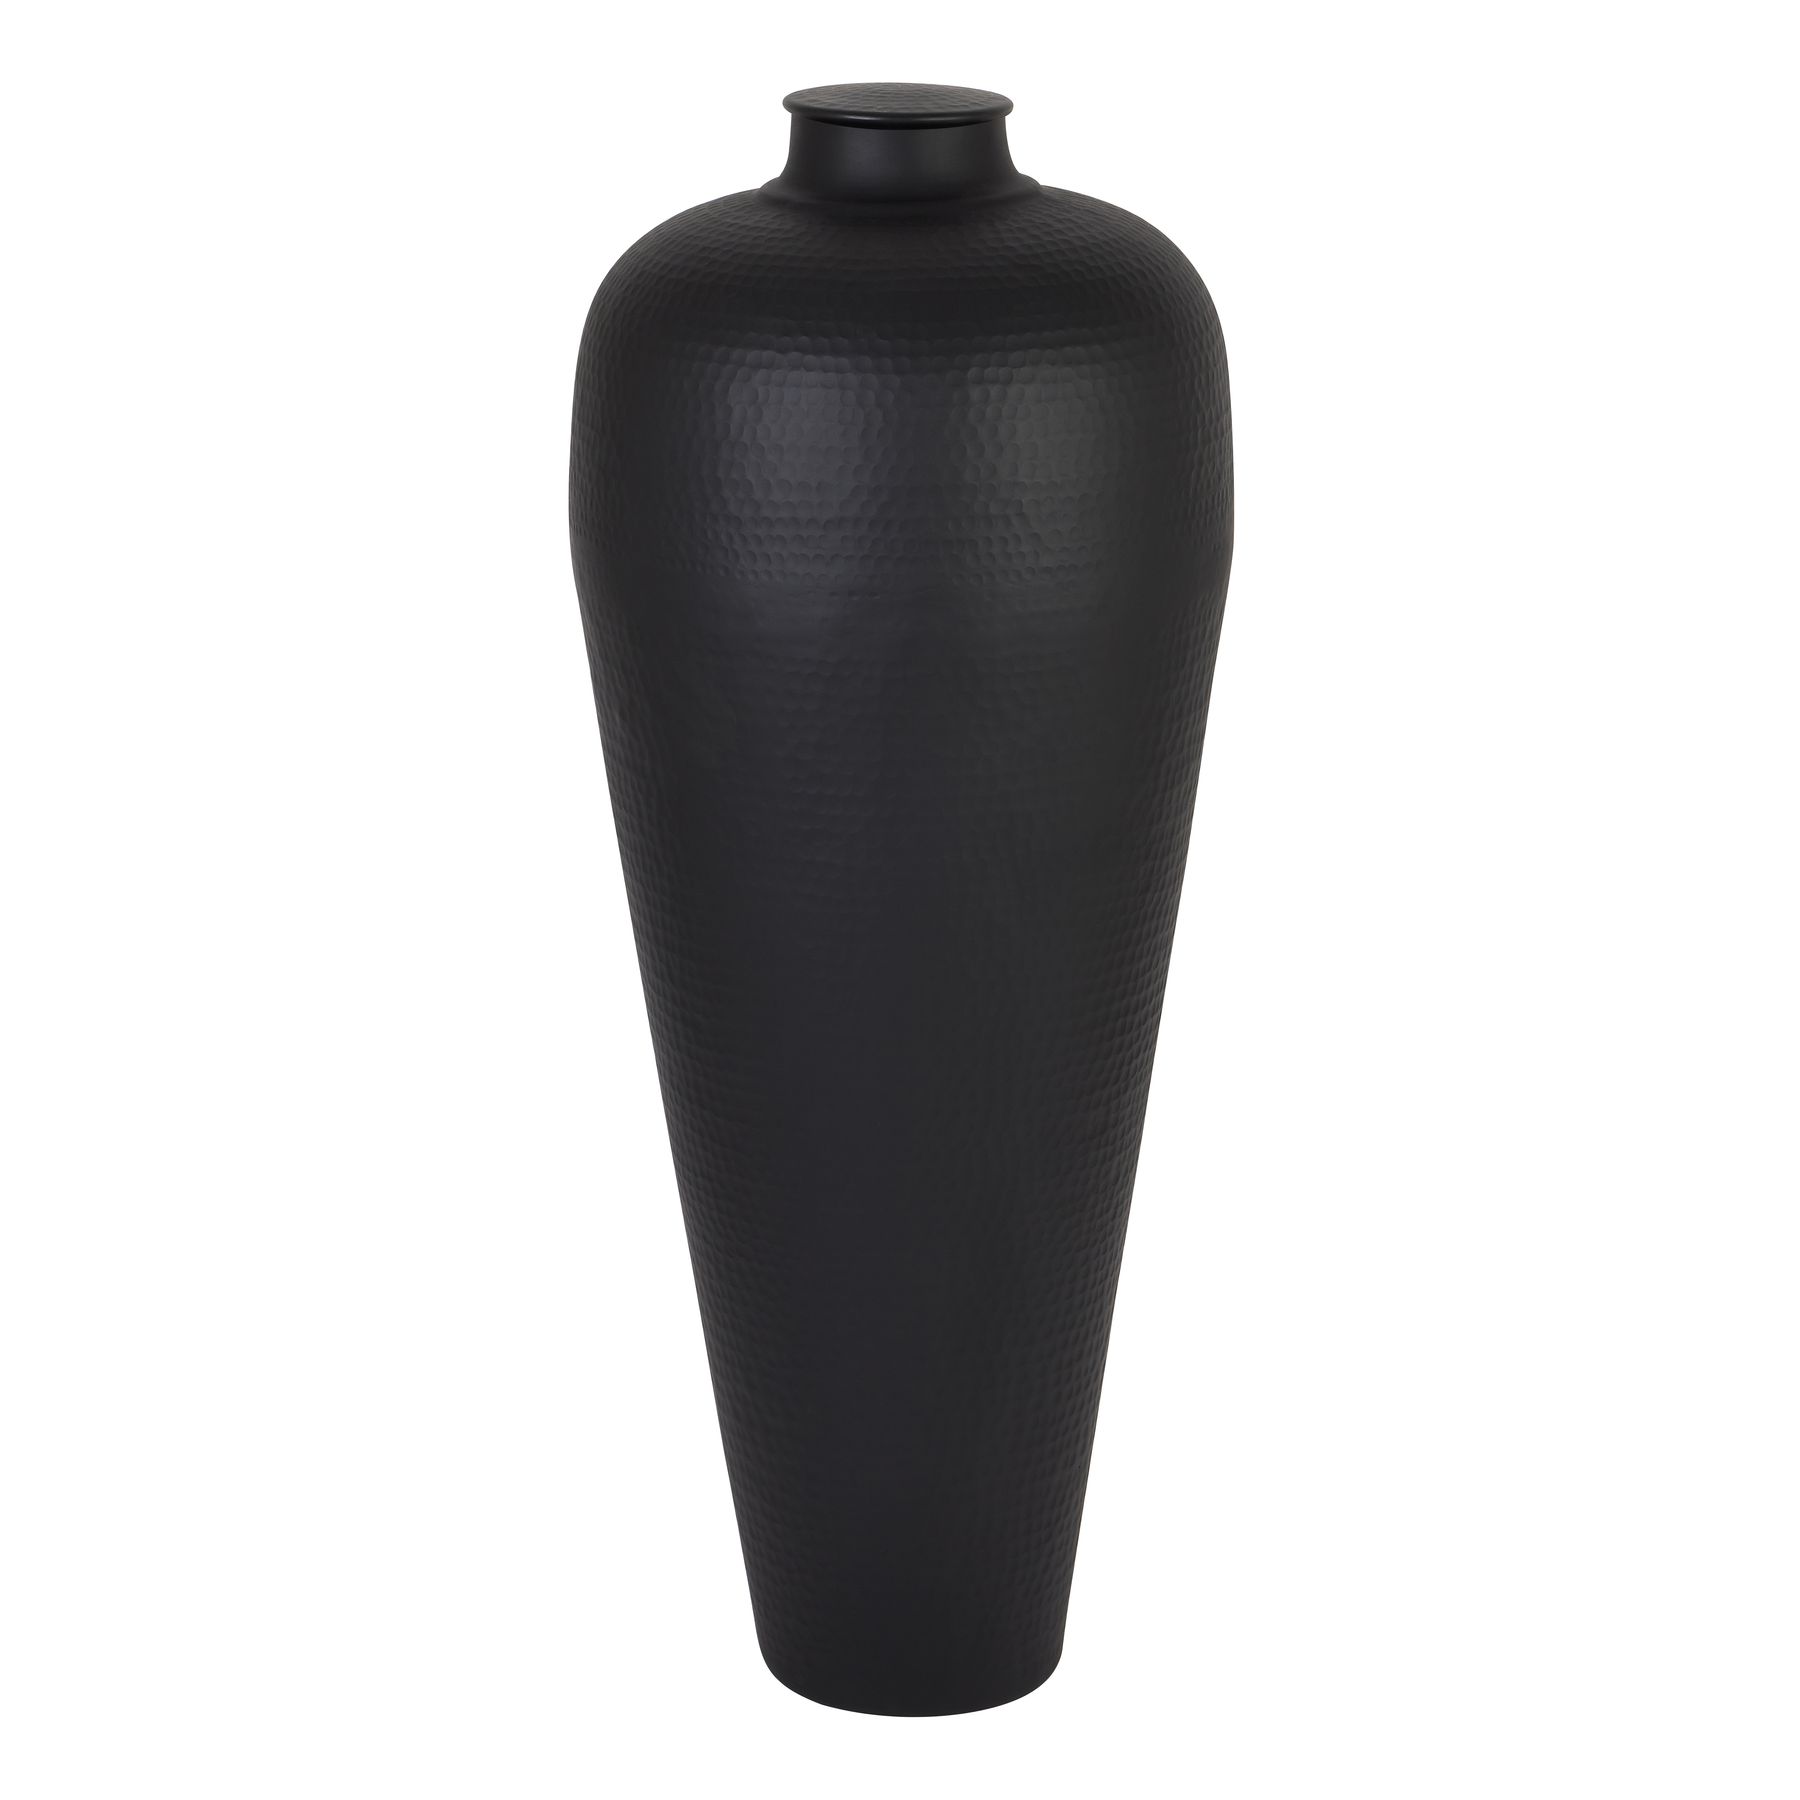 Matt Black Large Hammered Vase With Lid - Image 1